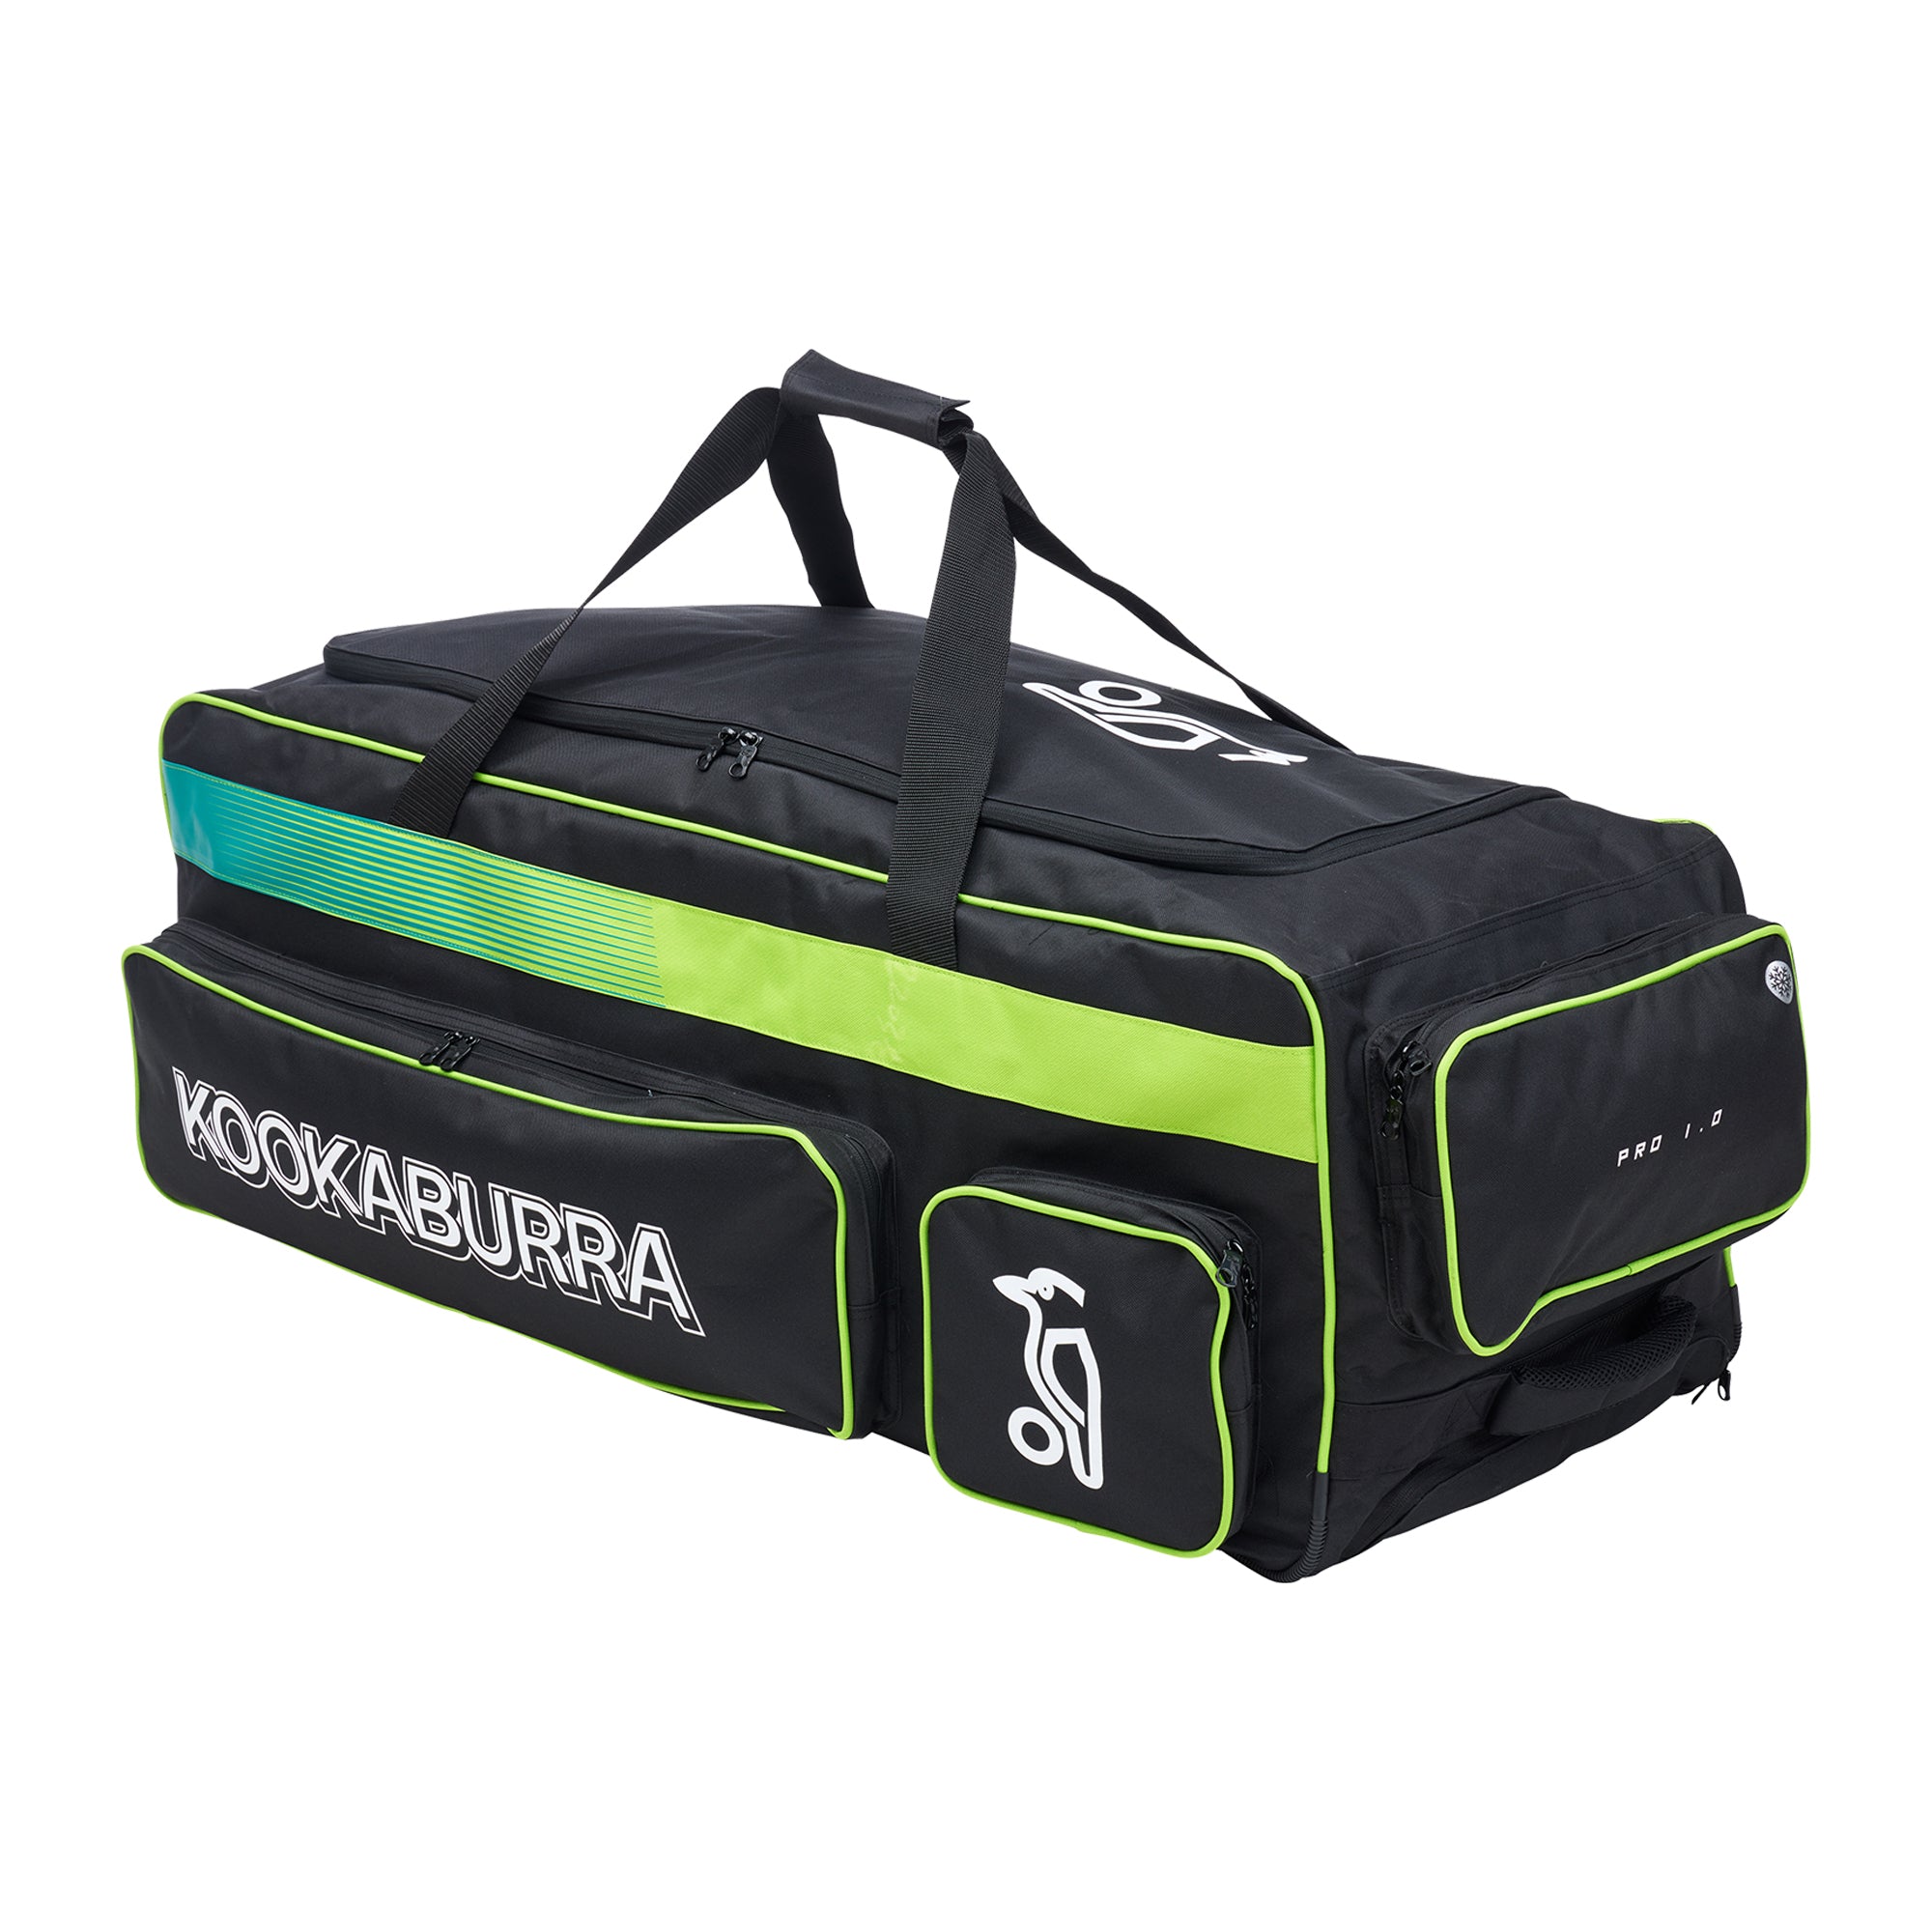 Kookaburra Pro 1.0 Wheel Cricket Kit Bag Black/Lime